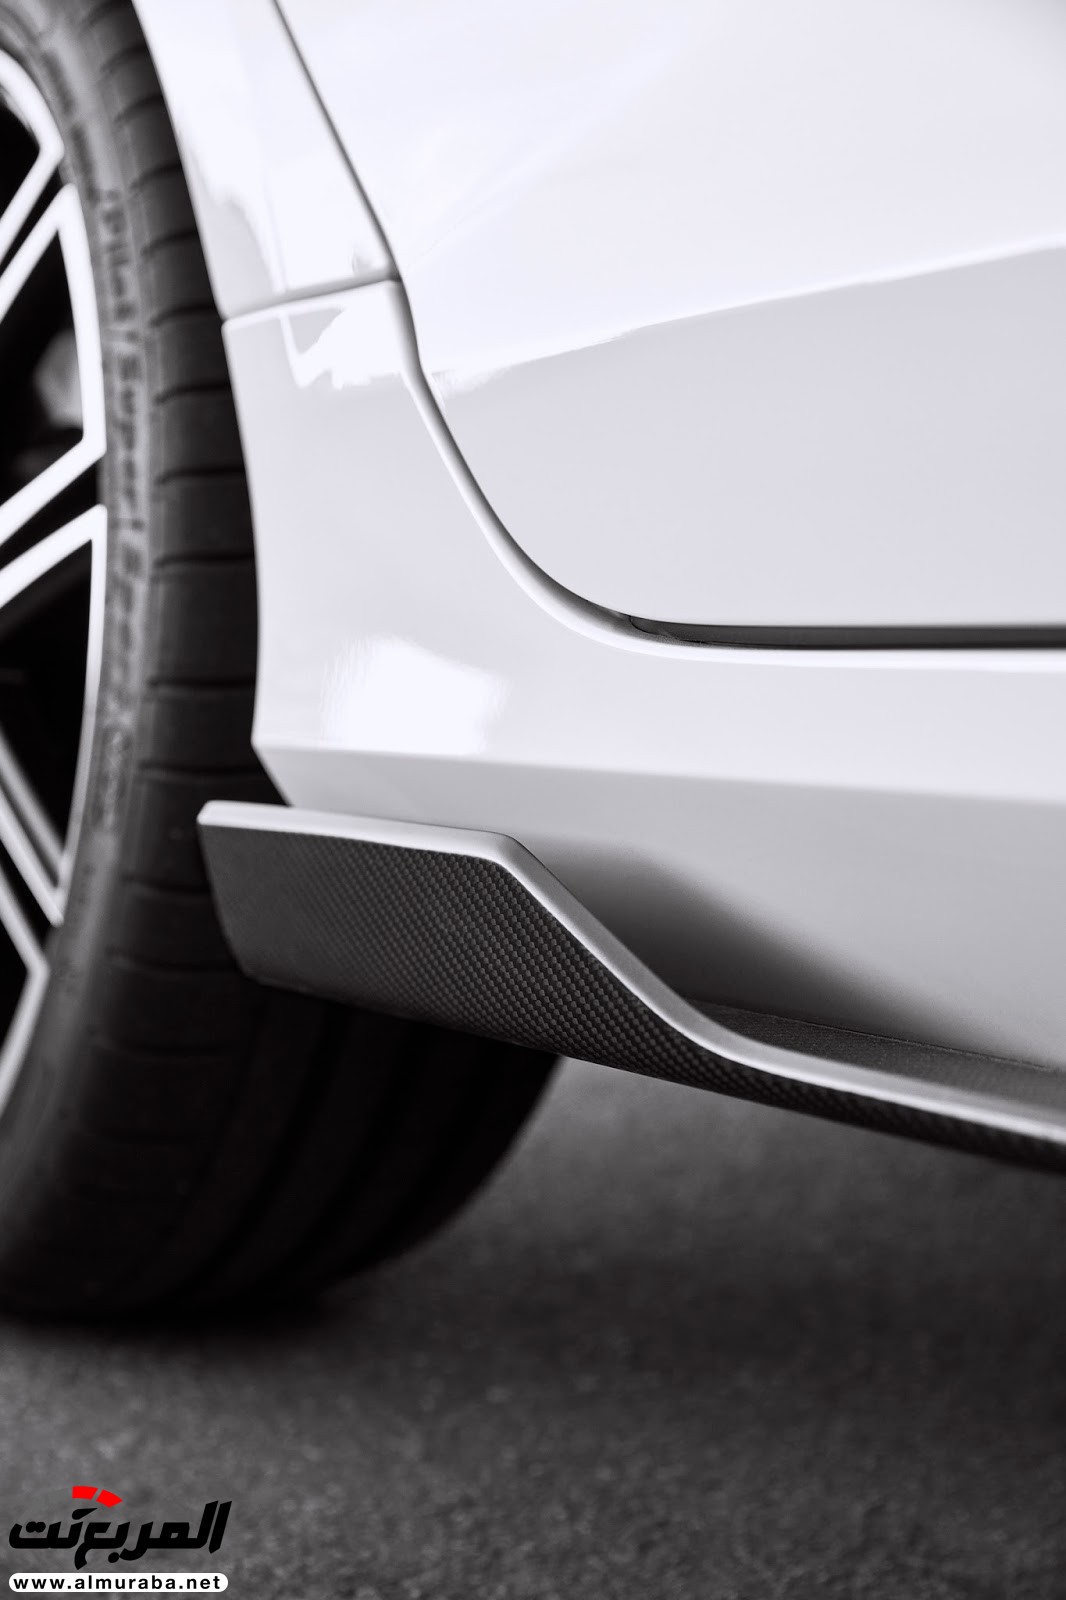 رسميًا: فولفو تنفصل عن بوليستر المصنعة لسياراتها للأداء العالي 10